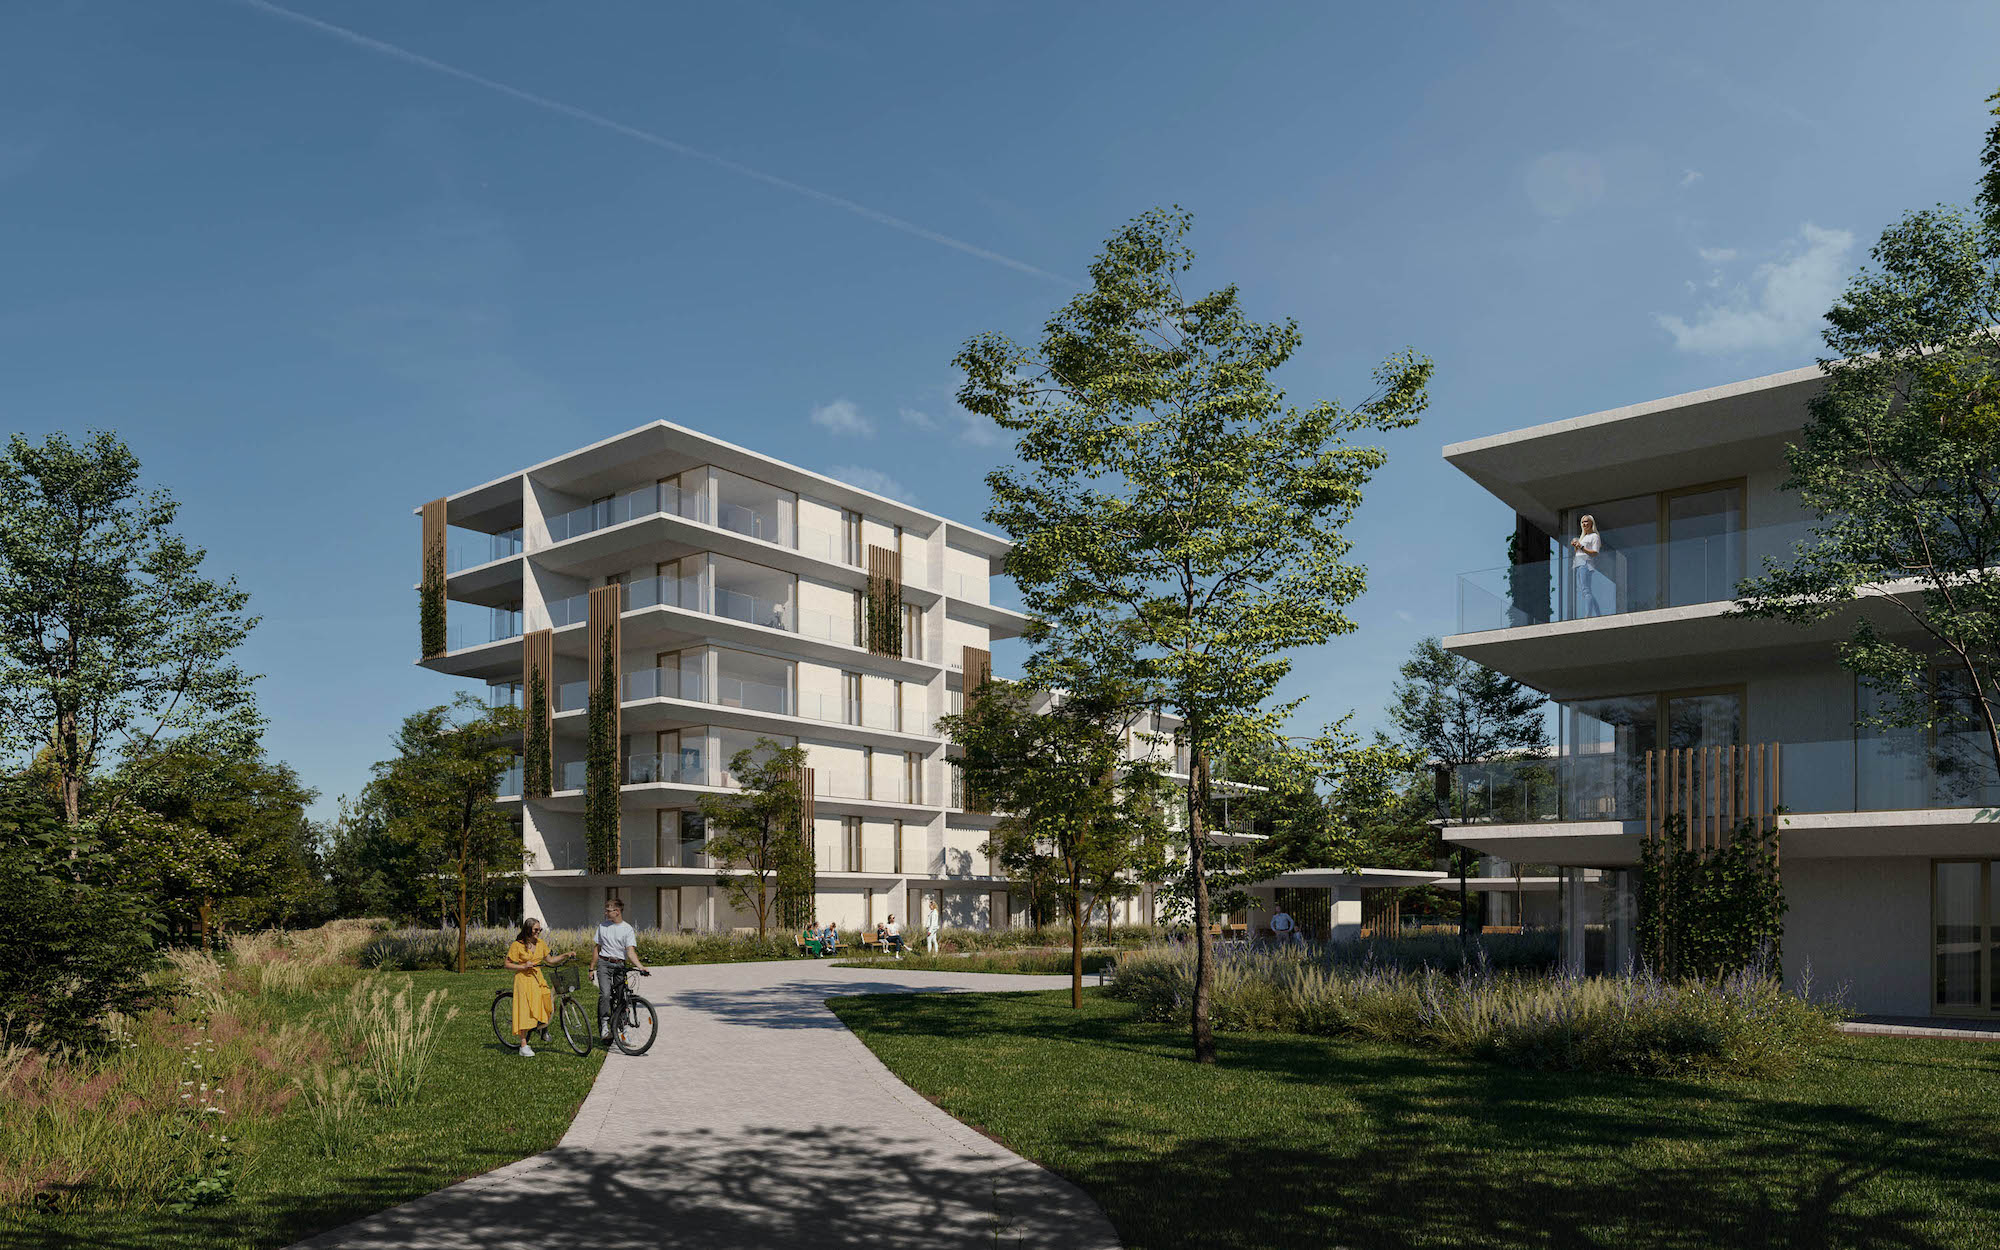 Waterlinie woonproject Neerpelt wonen aan het water passantenhaven renders ingang